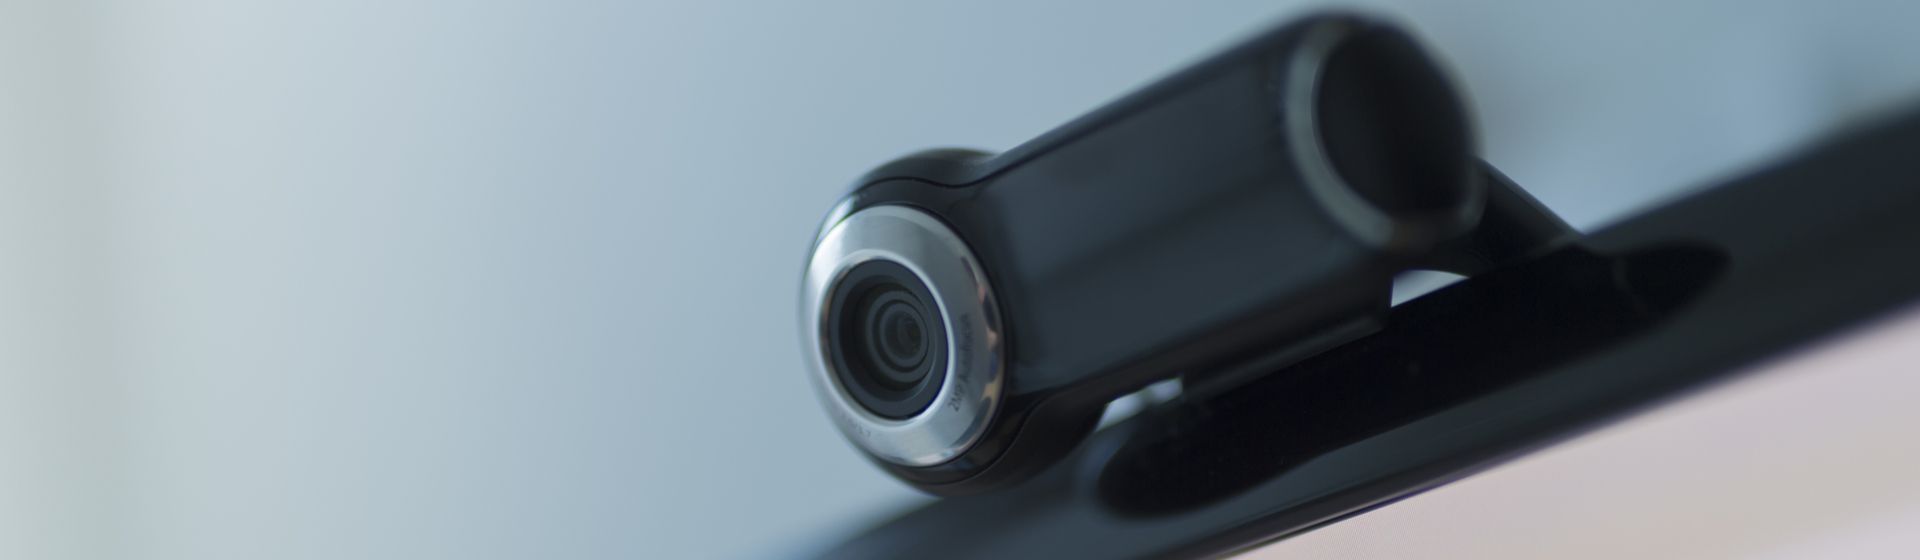 Teste de webcam: como testar câmera no PC ou notebook